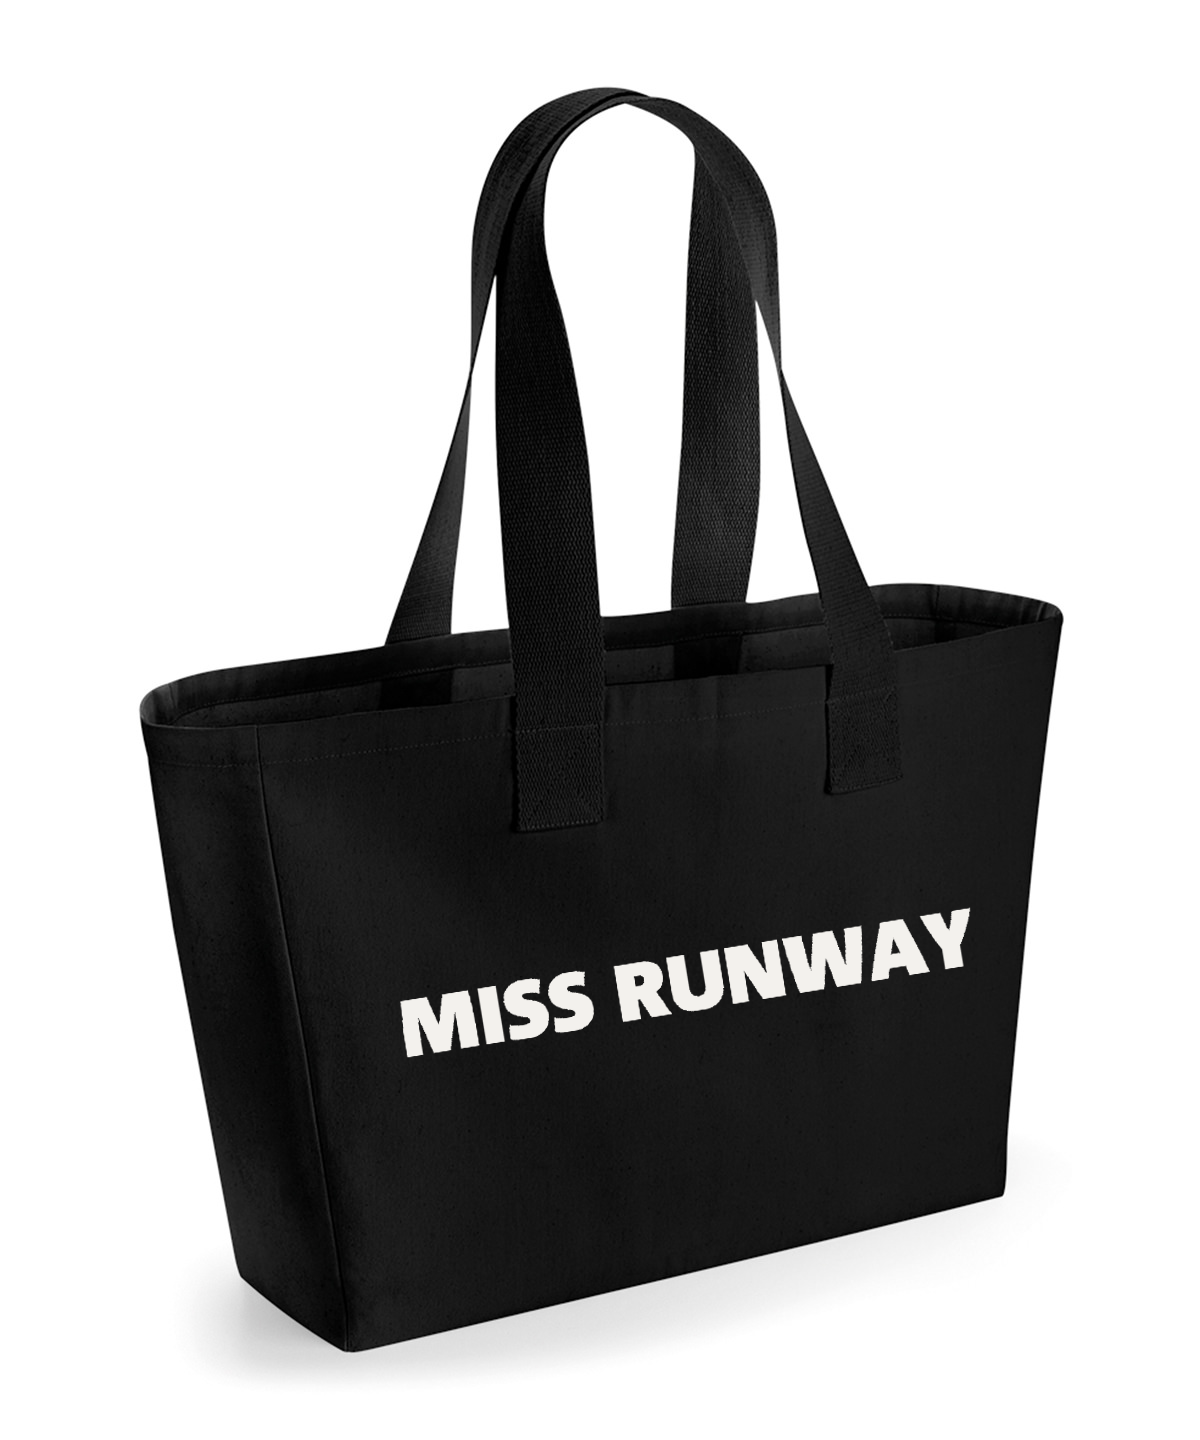 Miss Runway Tote Bag Black